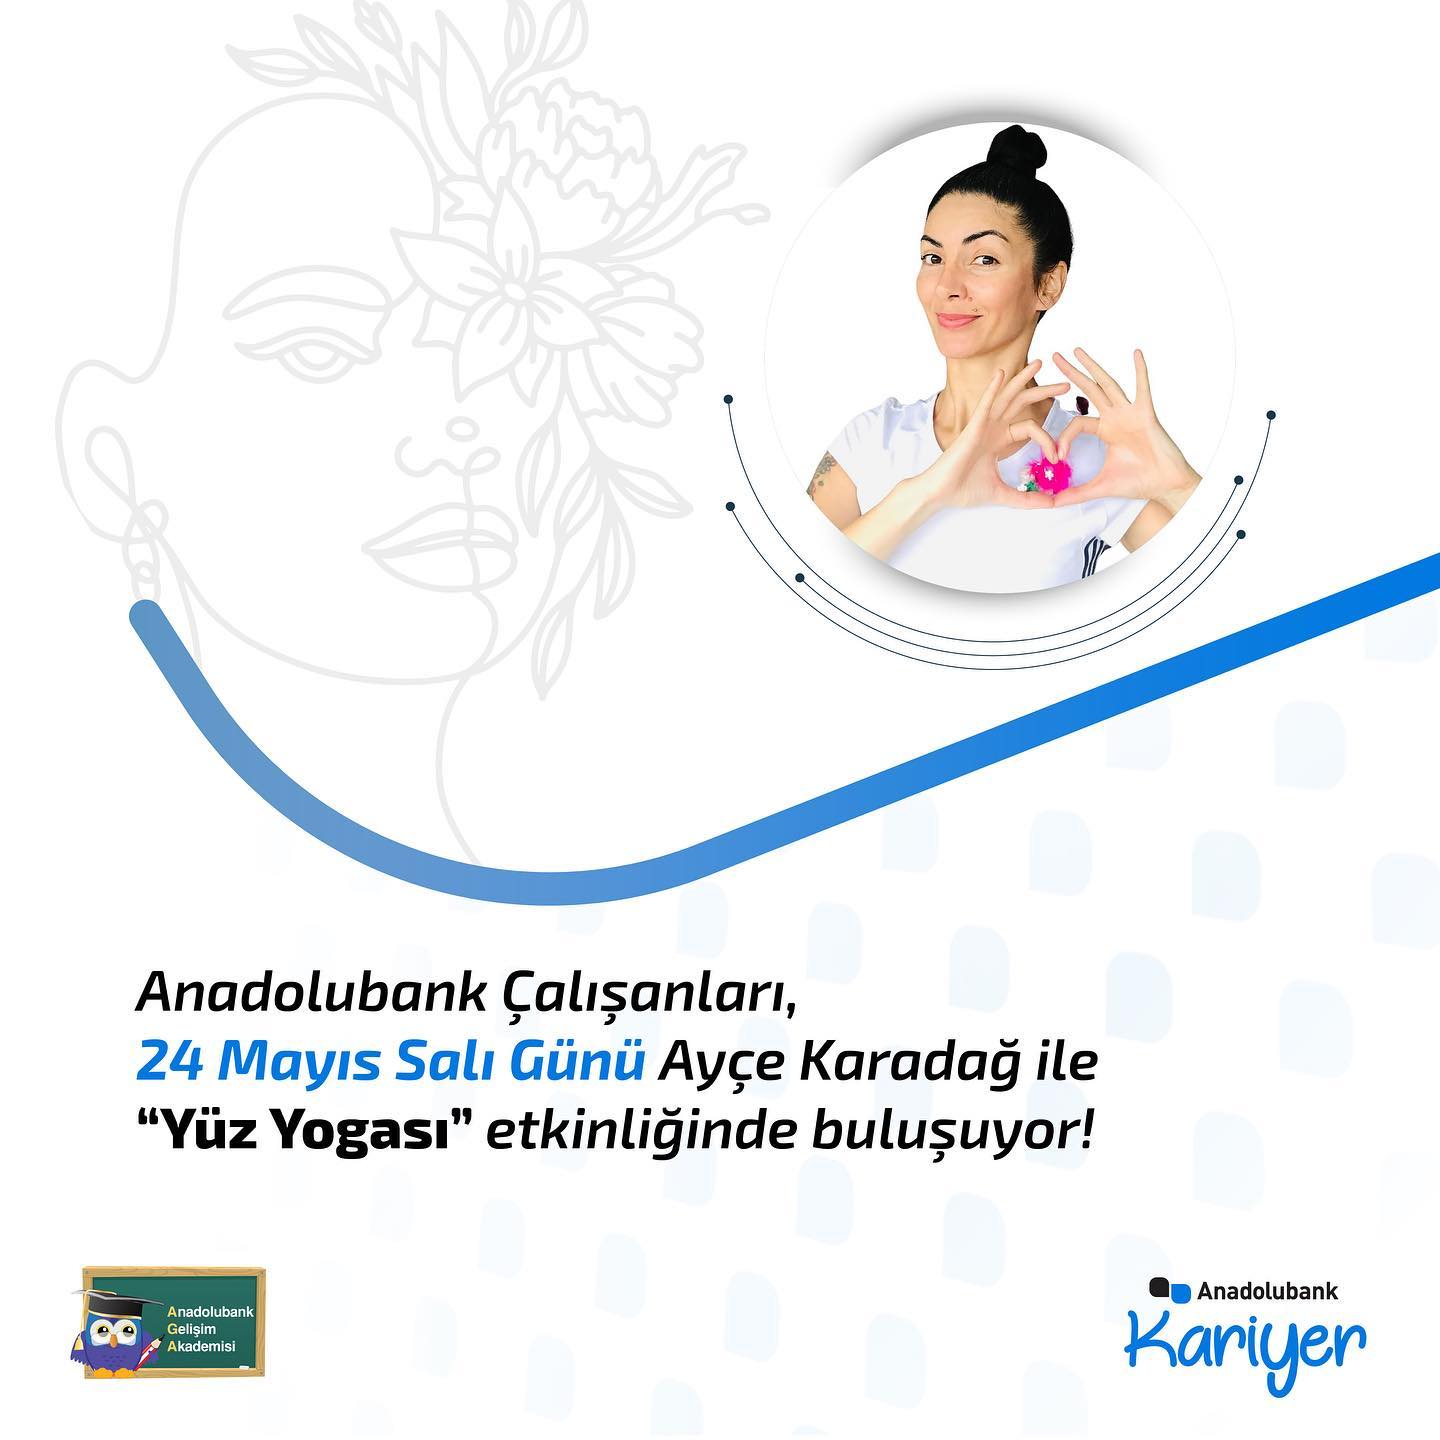 Anadolubank Çalışanları, Ayçe Karadağ ile “Yüz Yogası” etkinliğinde buluşuyor!  - 0